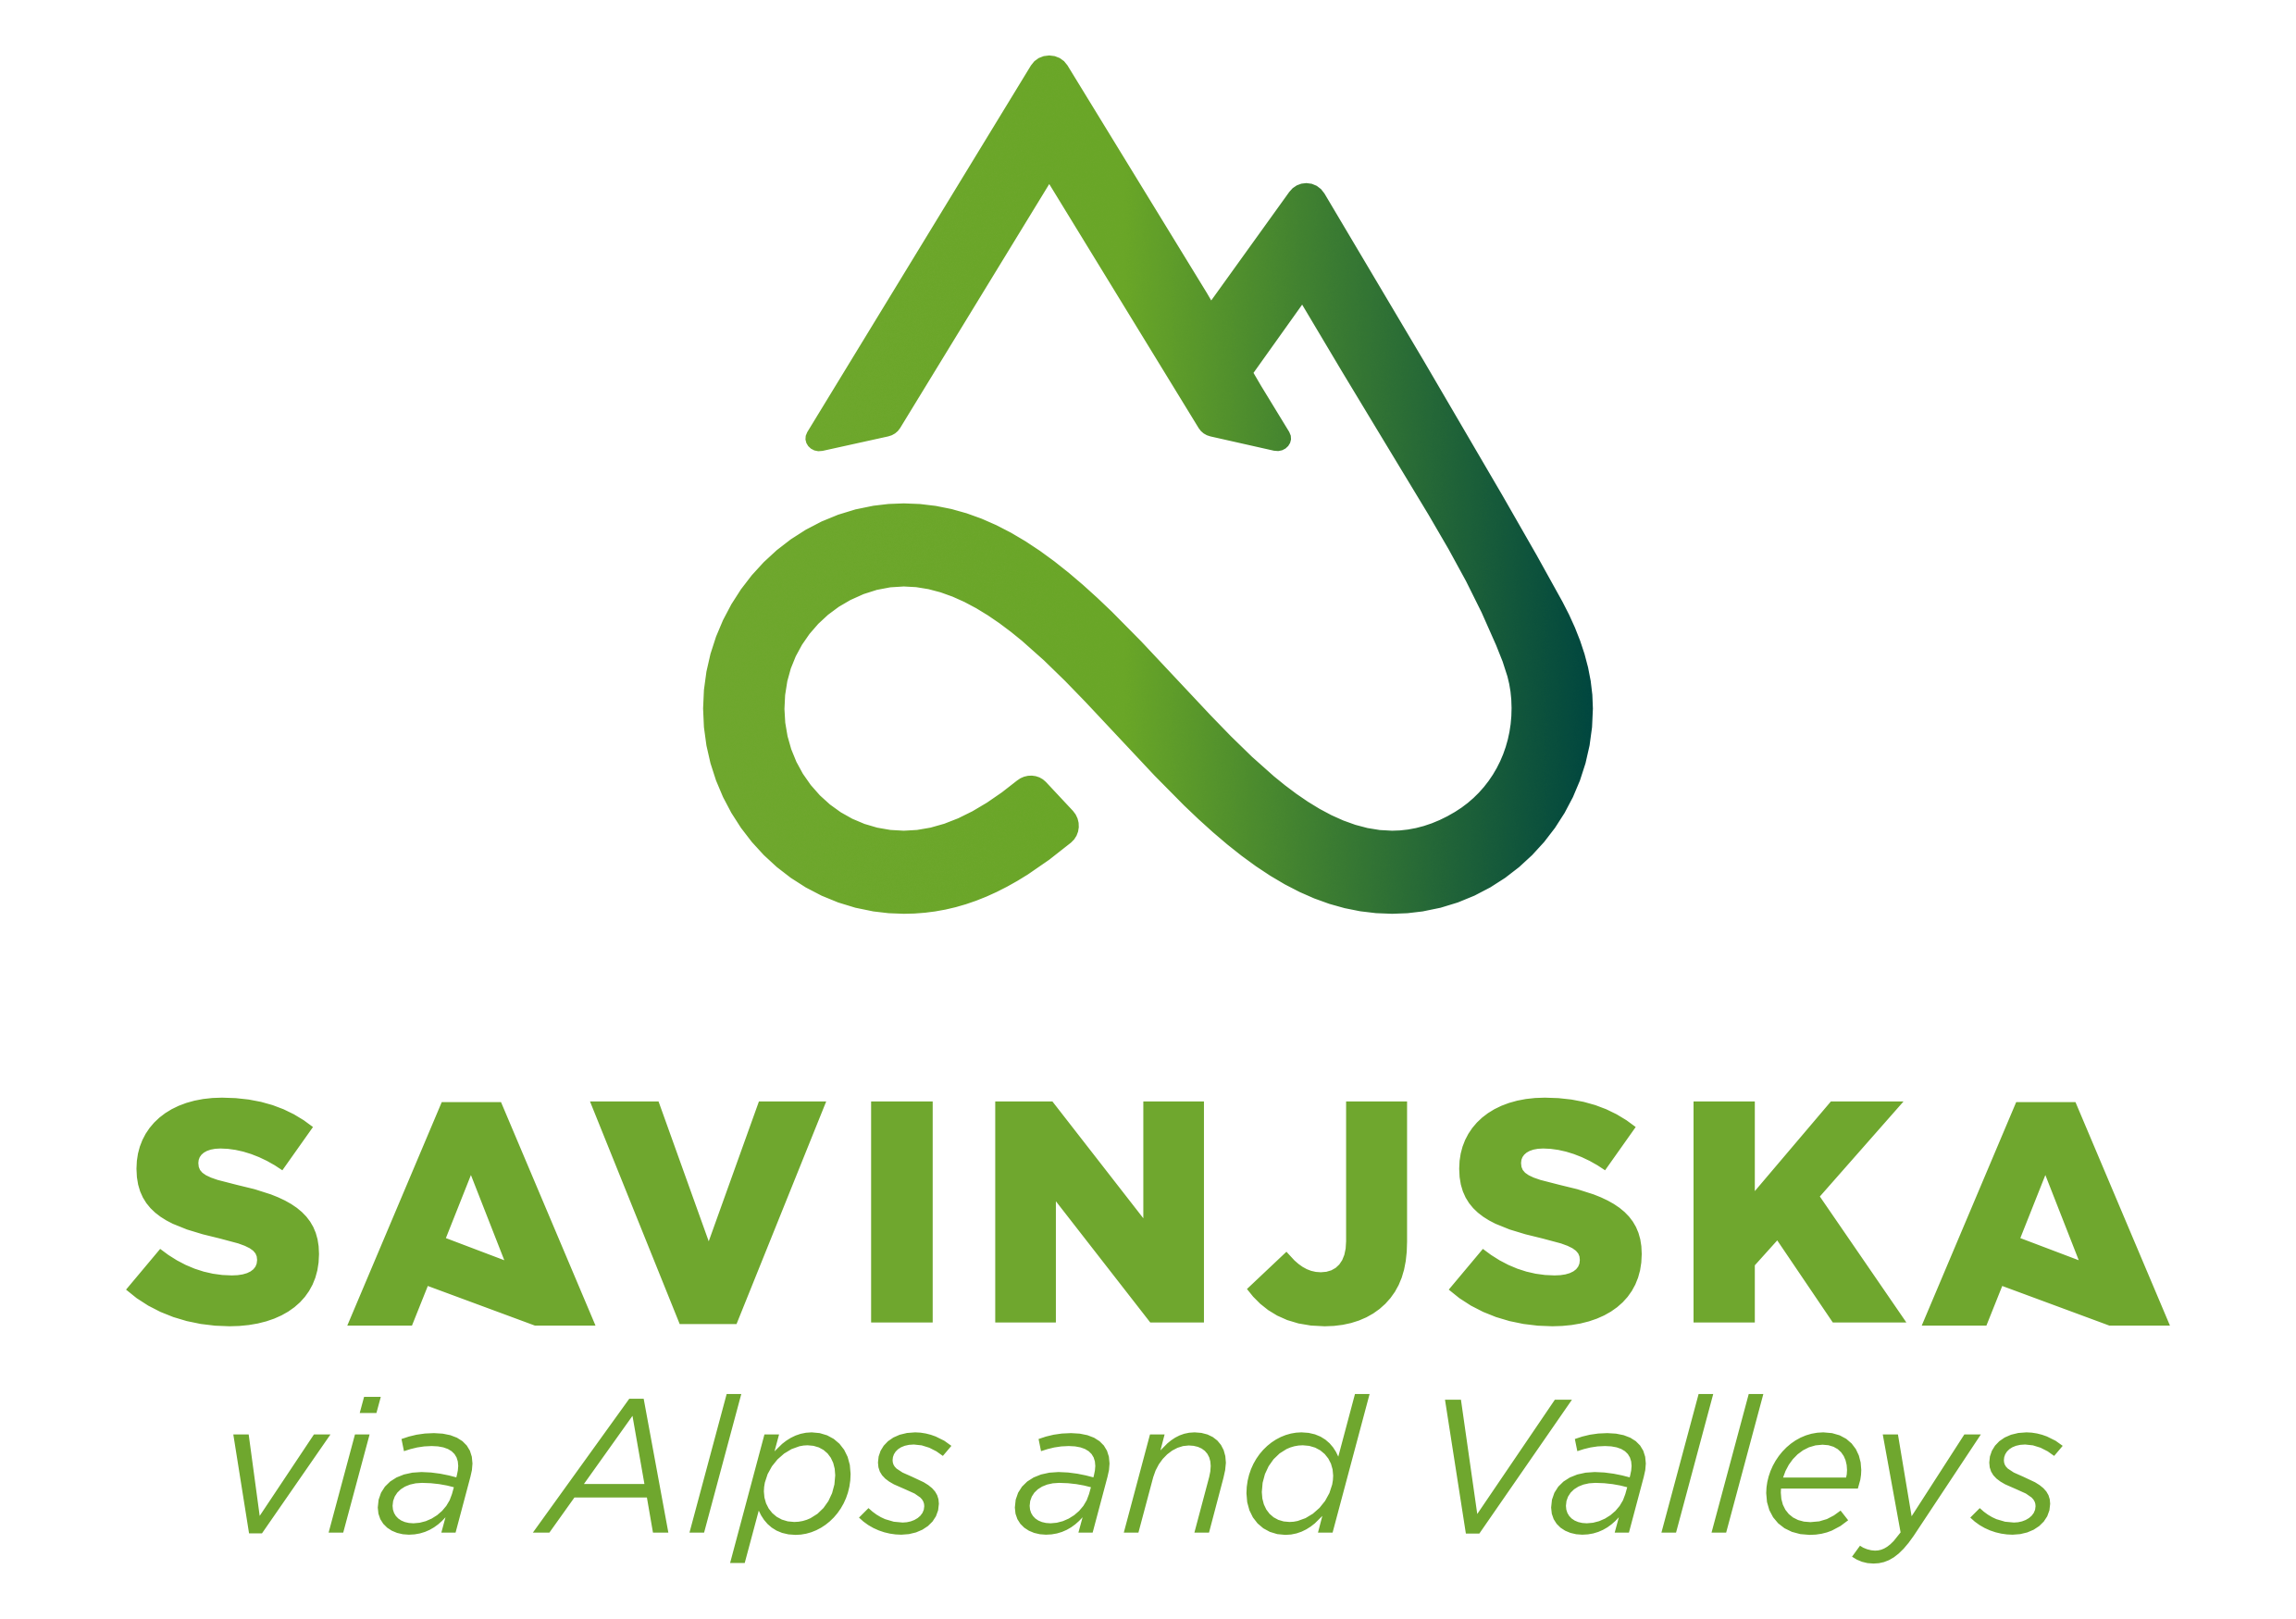 Savinjska via Alps and Valleys logo3.png